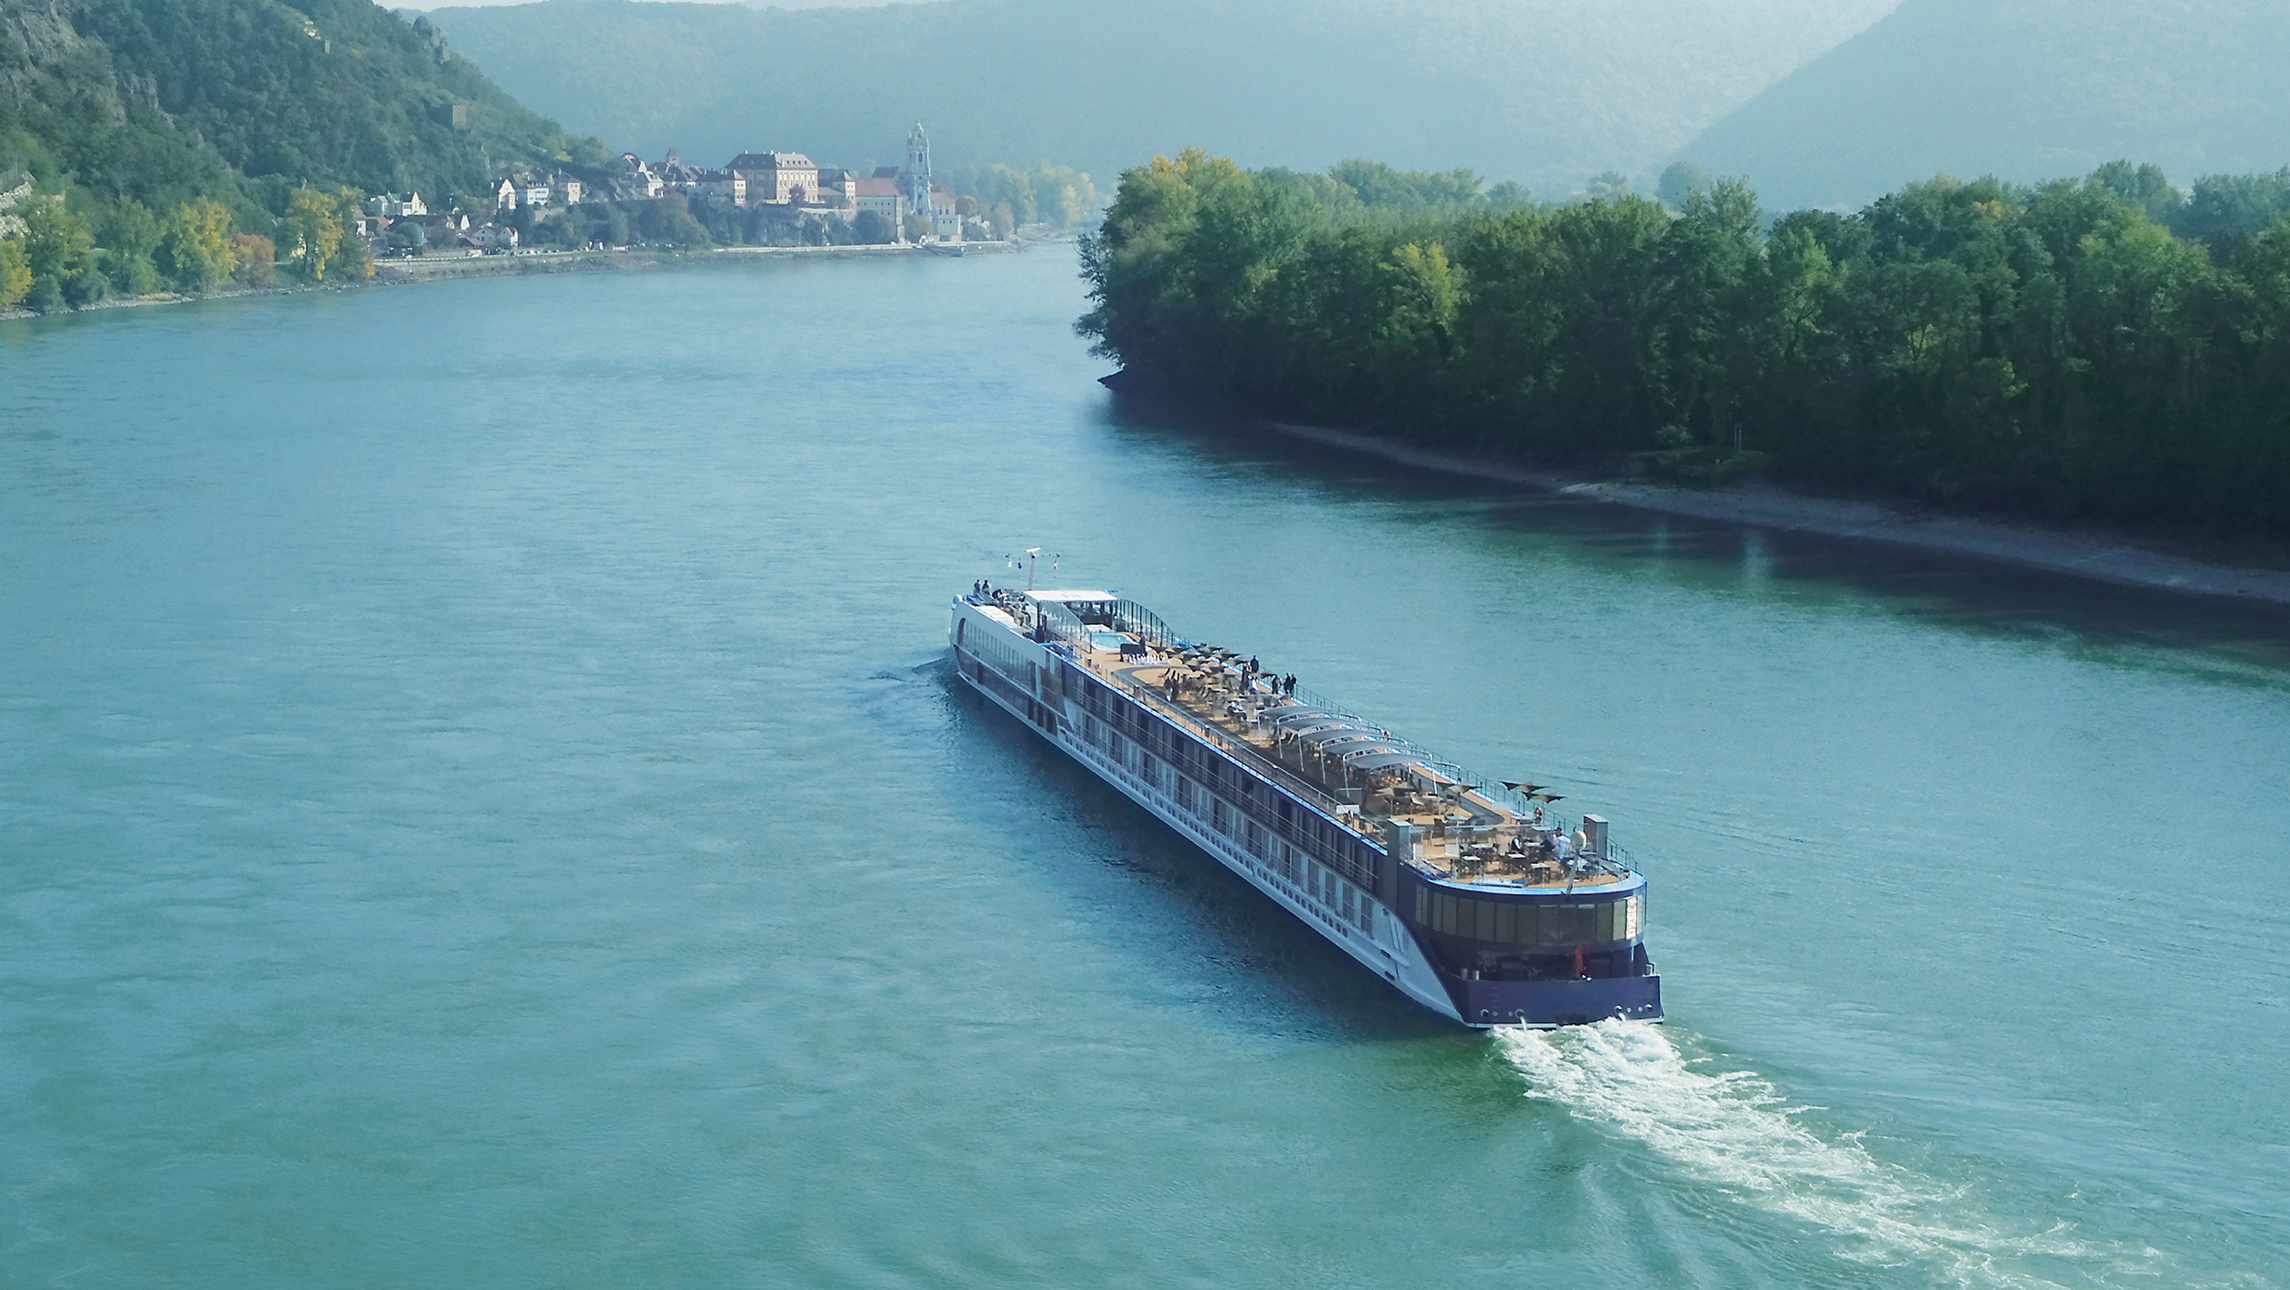 An APT river ship sailing down the Danube